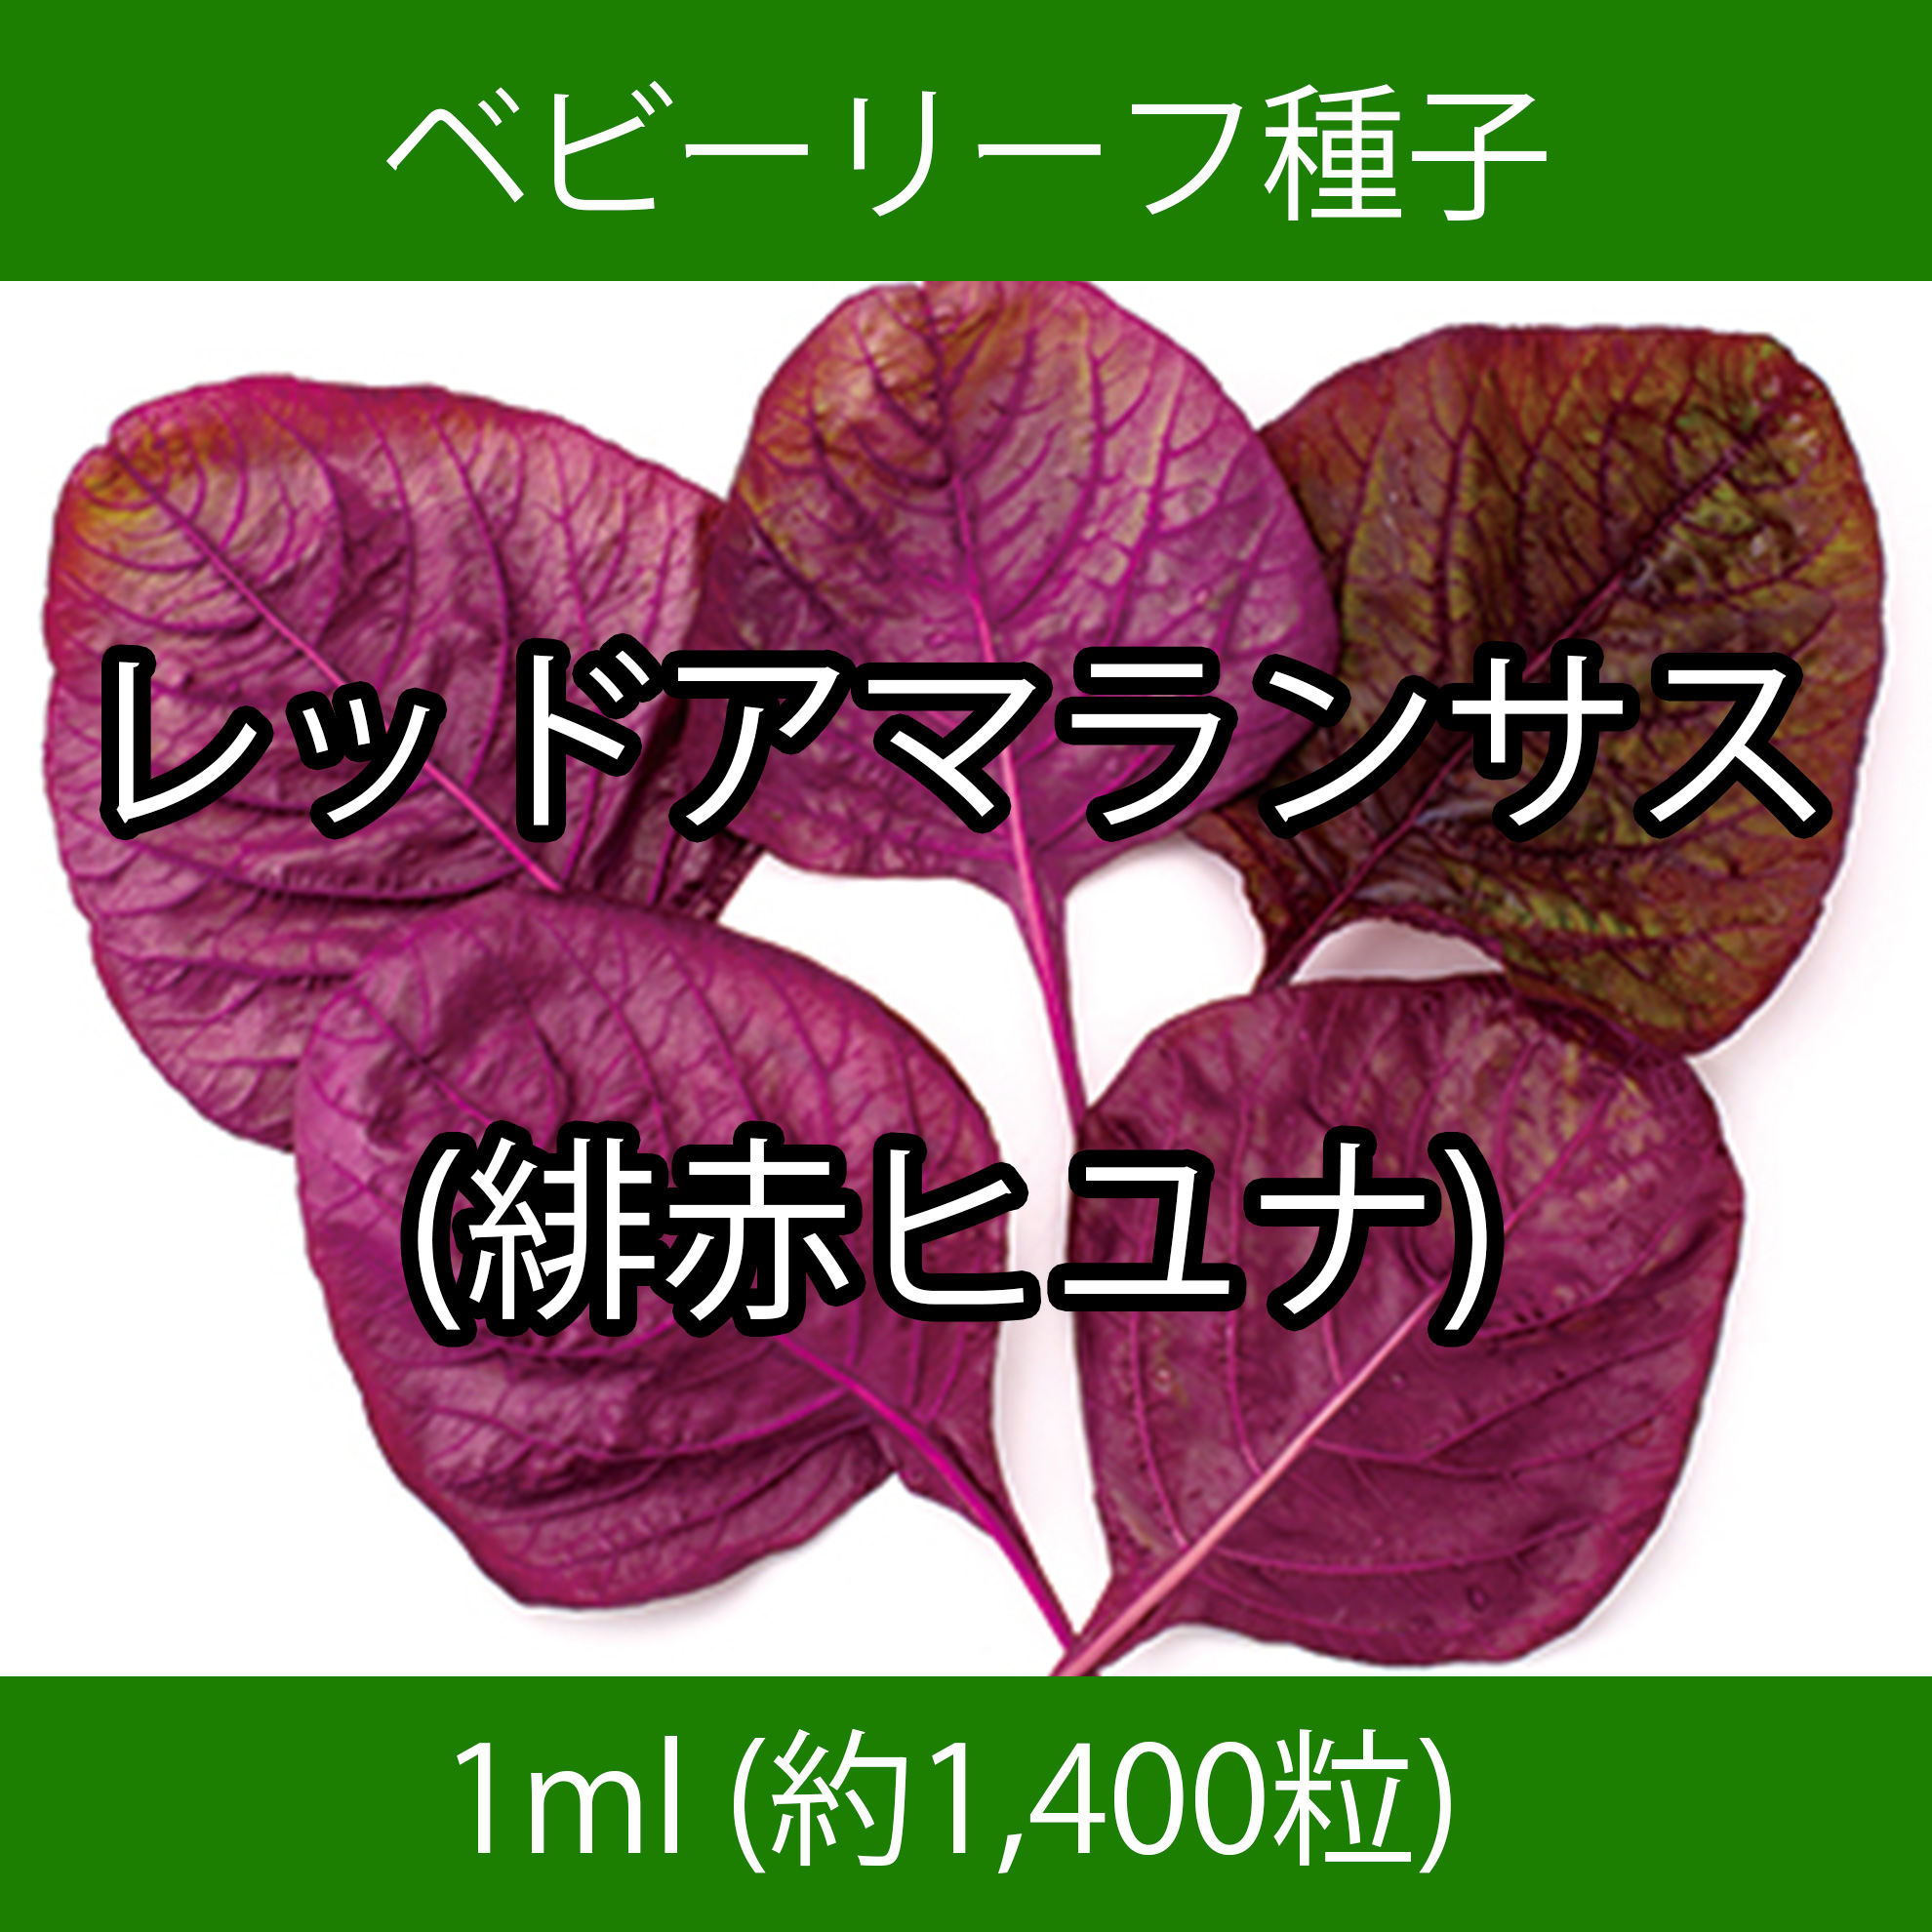 ベビーリーフ種子 B-38 レッドアマランサス(緋赤ヒユナ) 1ml